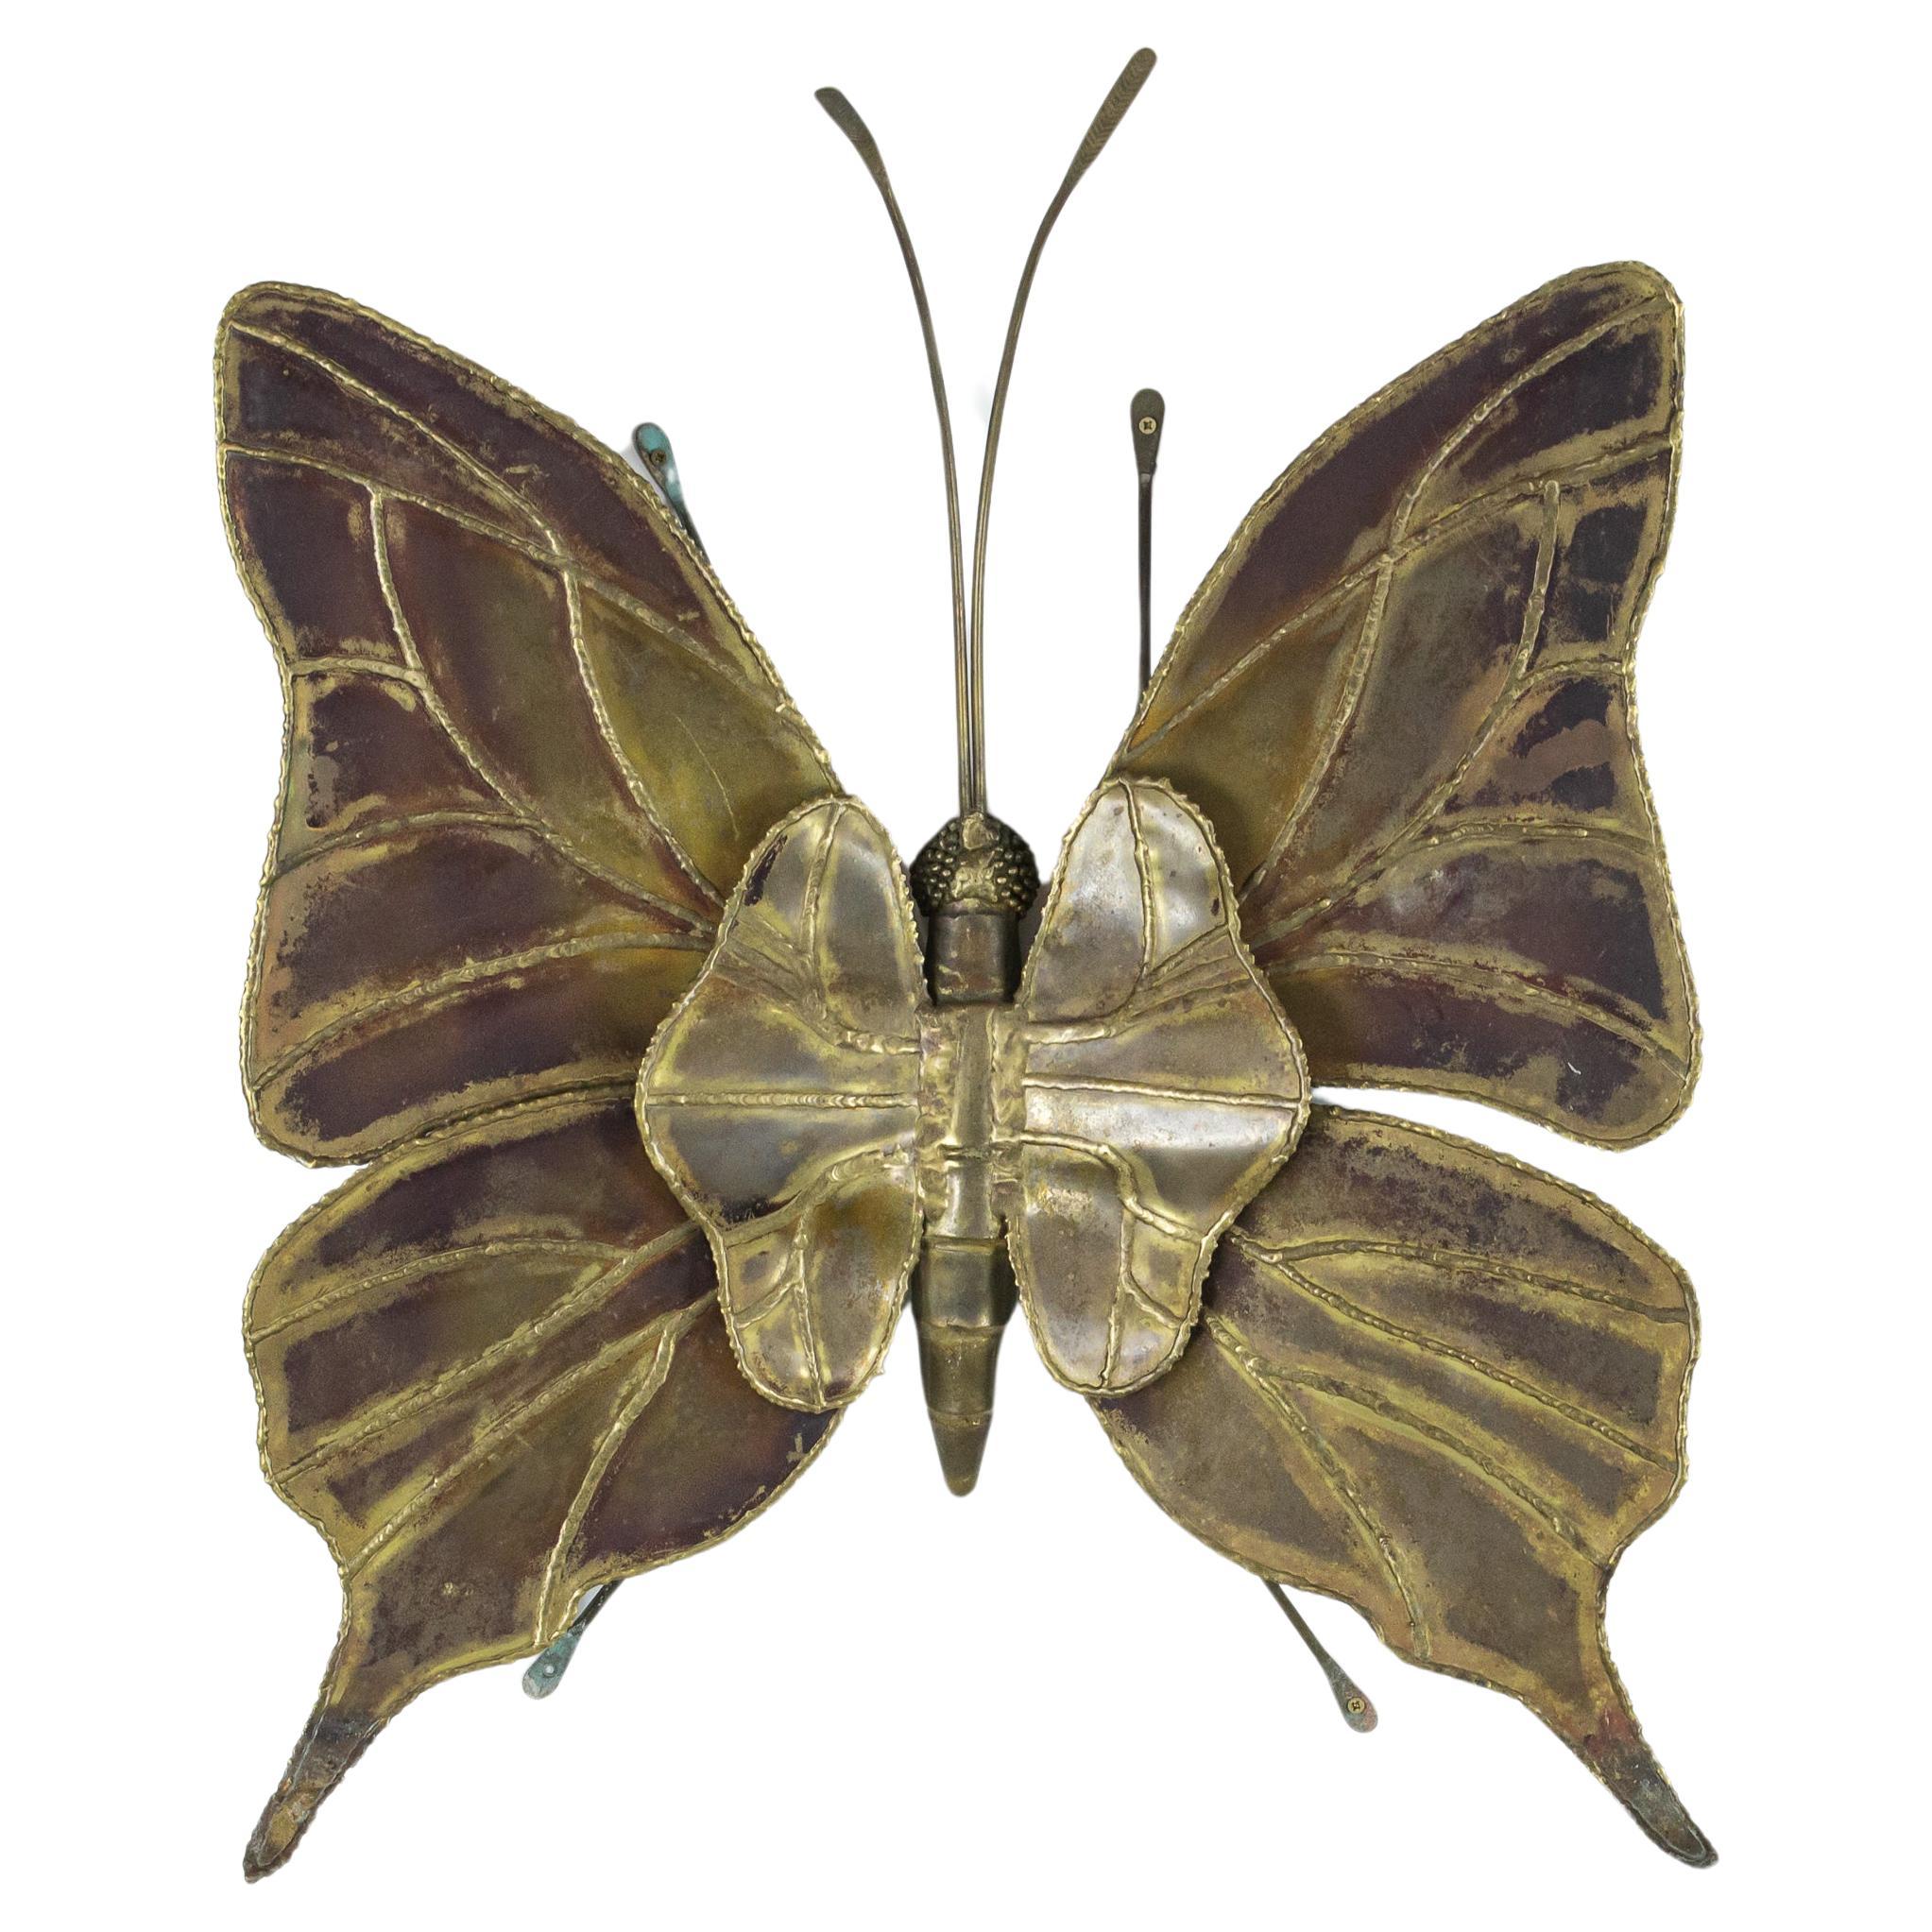 Impressionnante applique papillon attribuée à Henri Fernandez